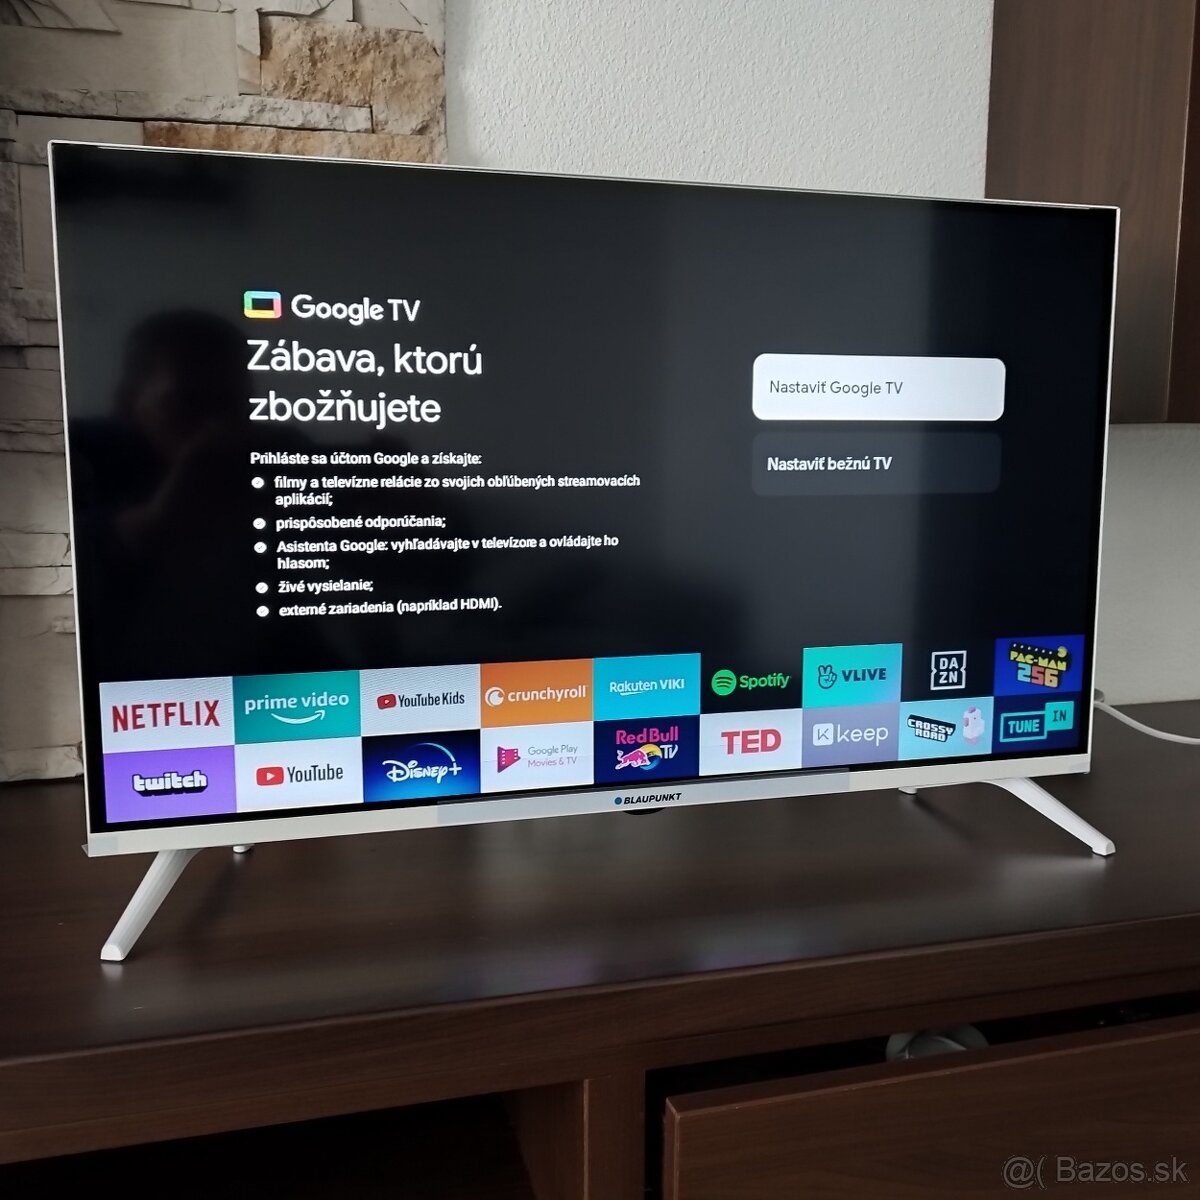 Štýlový Smart Led televízor Blaupunkt Google TV